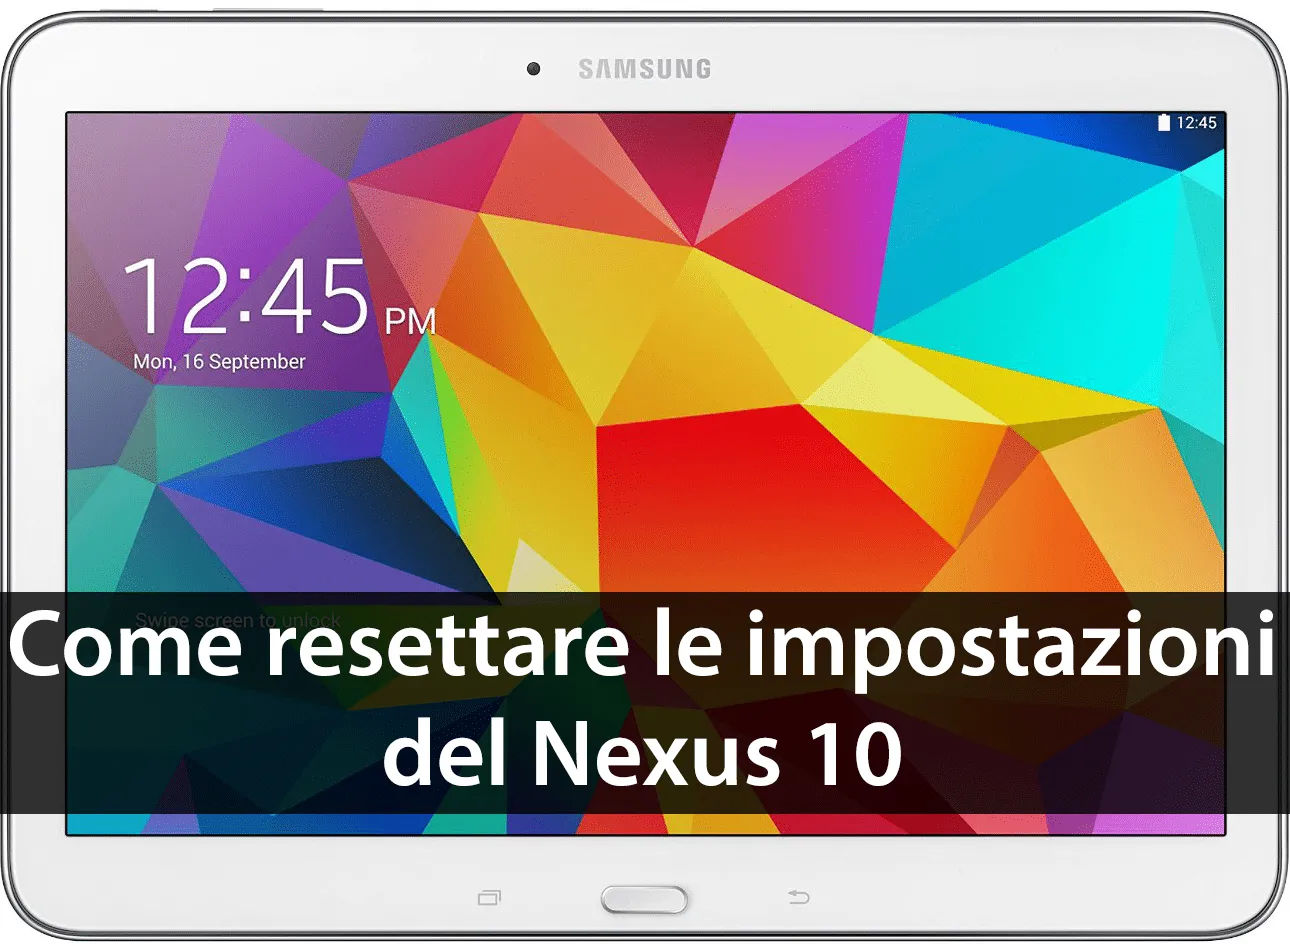 Come resettare le impostazioni del Nexus 10